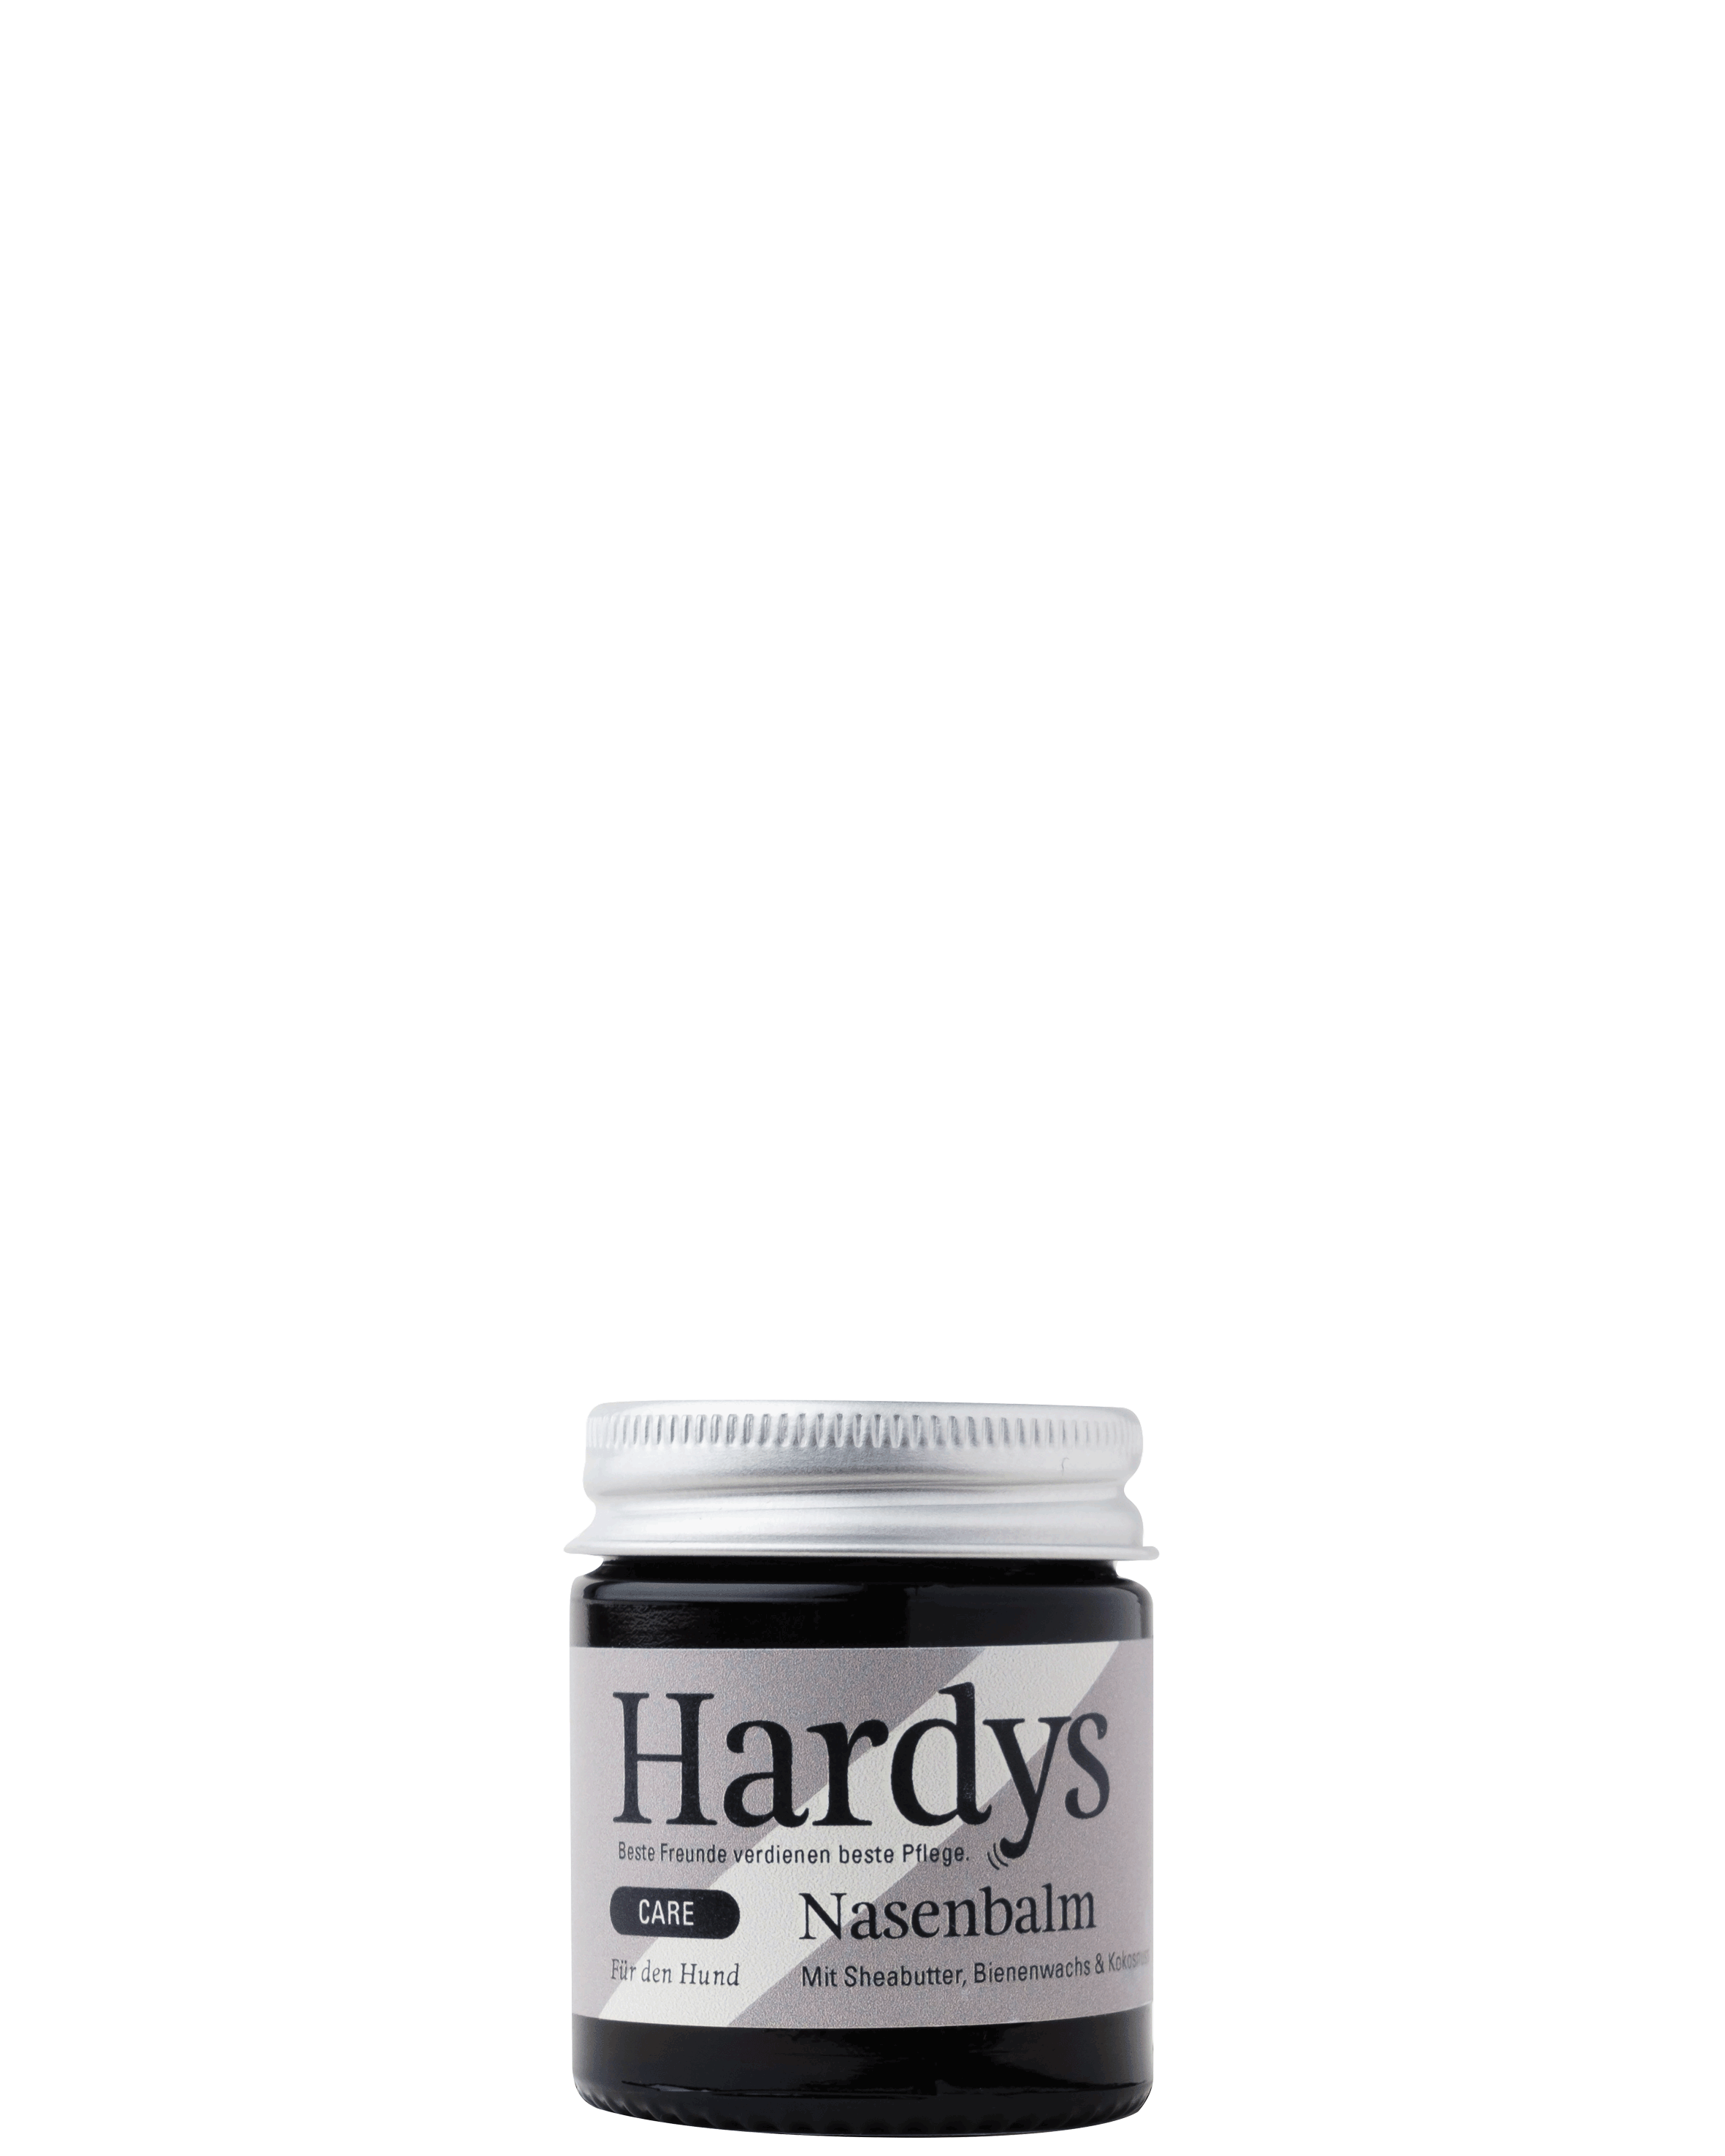 Hardys Care Nasenbalm mit Sheabutter, Bienenwachs und Kokosnuss, 30 ml